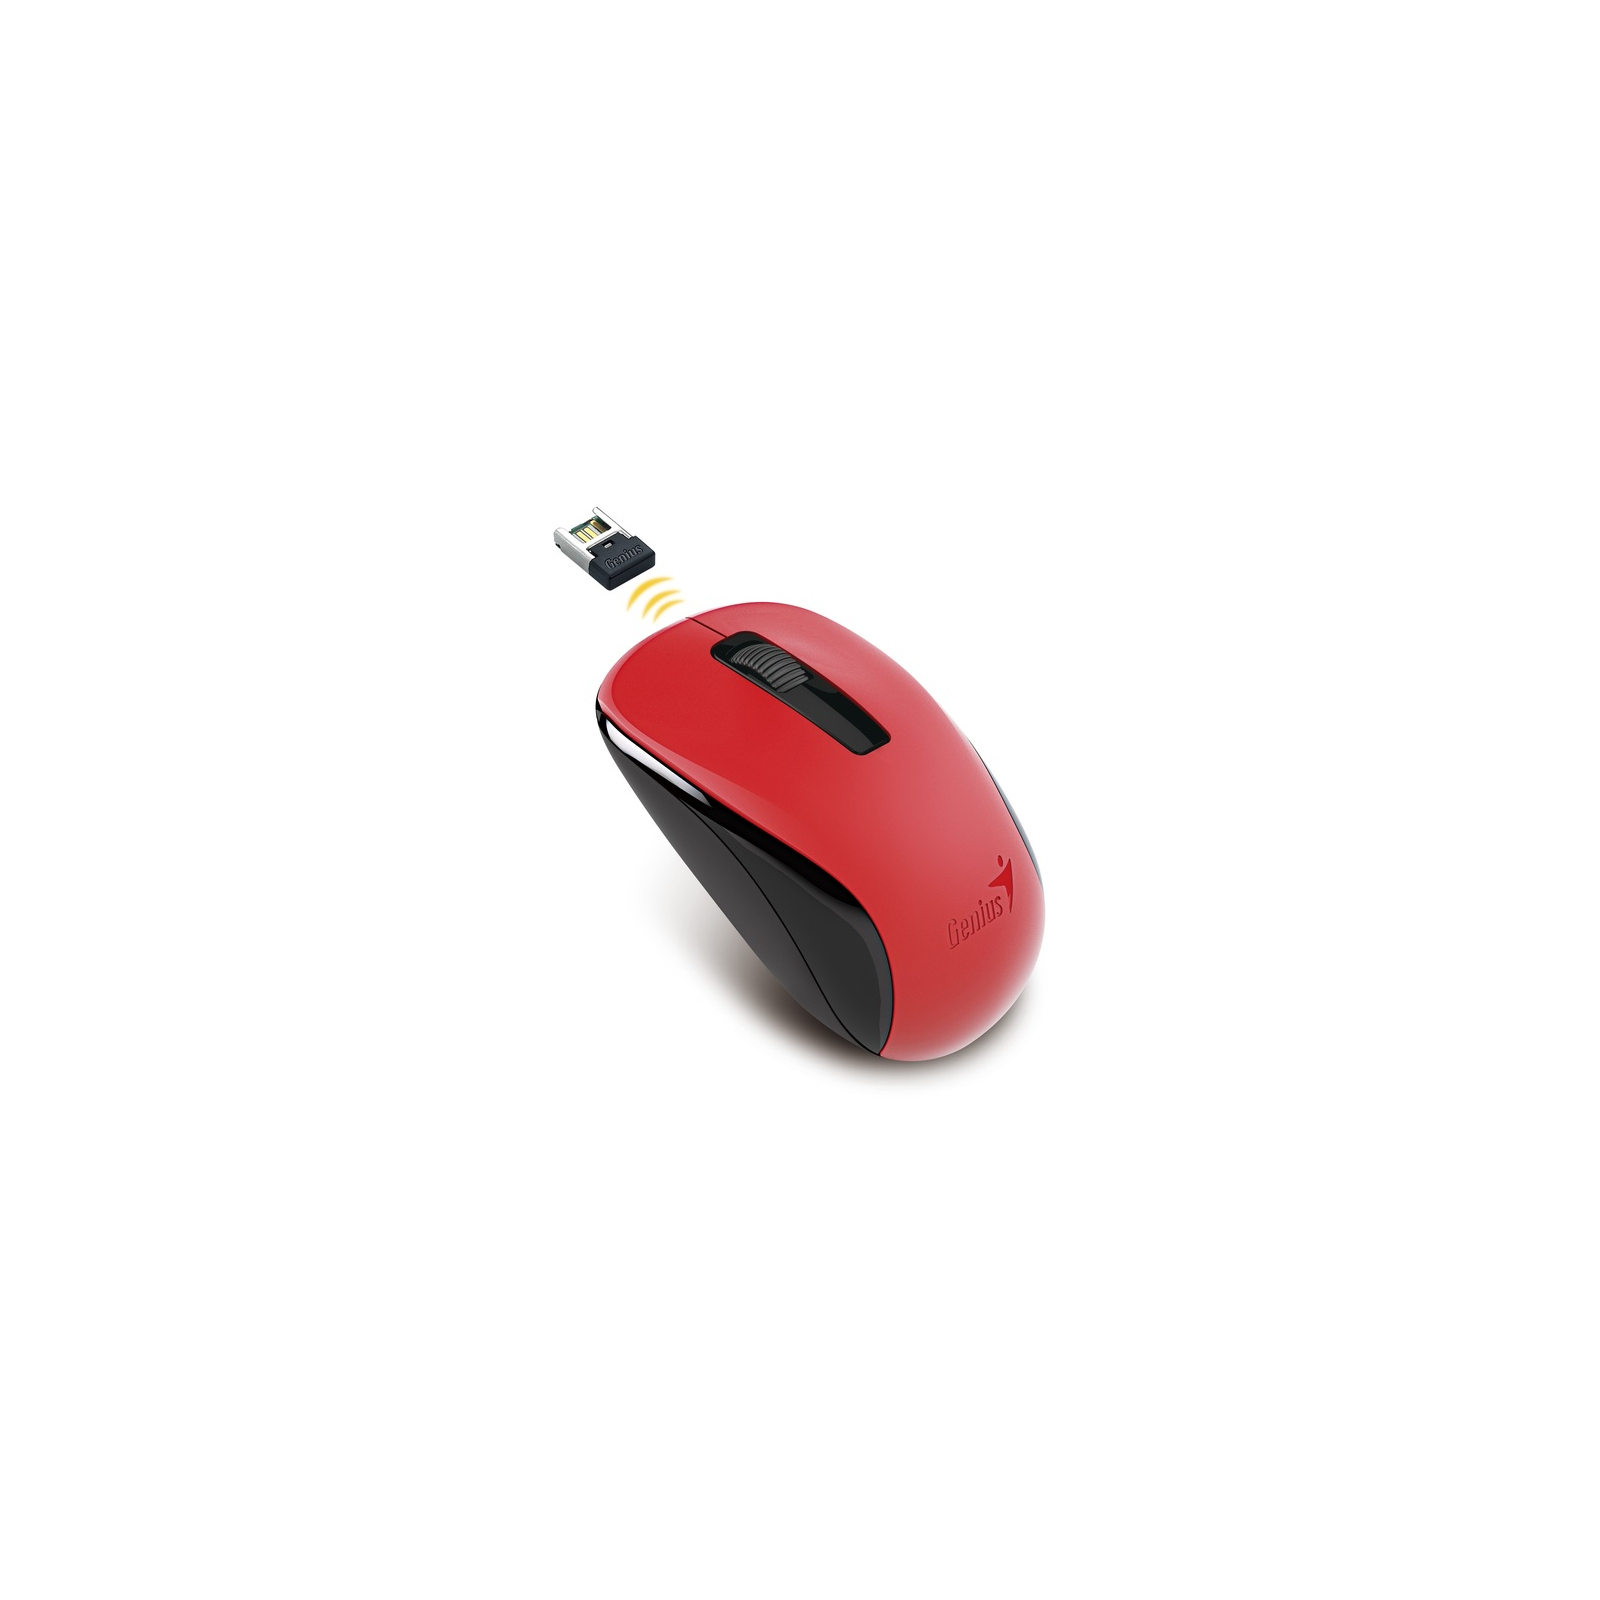 Мышка Genius NX-7005 Wireless Red (31030017403) изображение 2